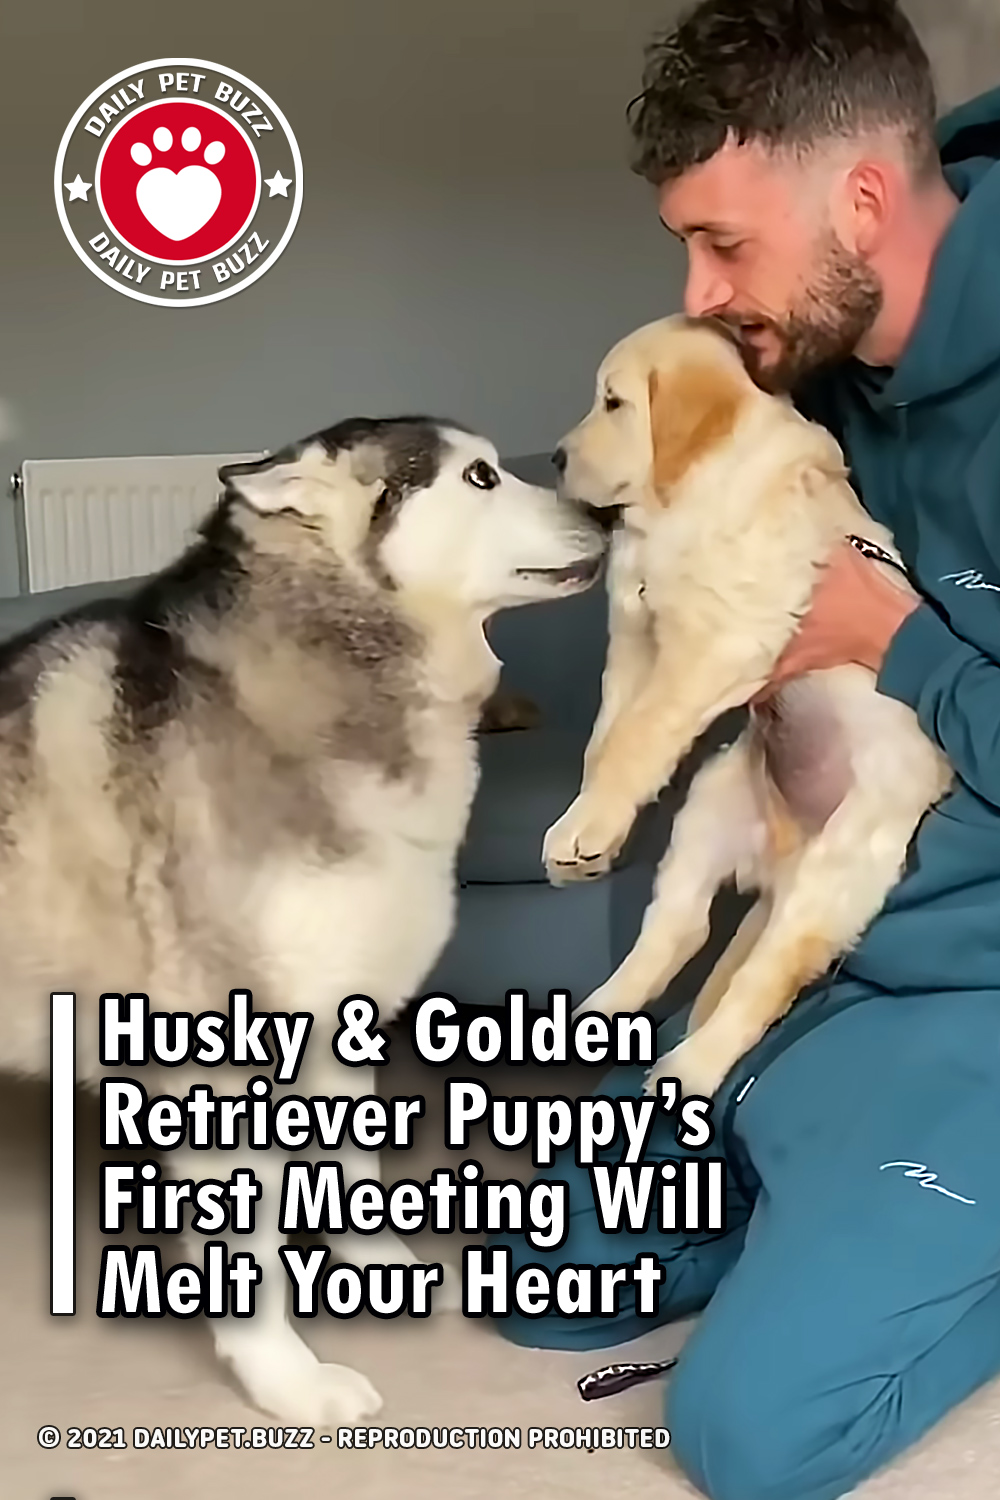 Husky & Golden Retriever Puppy’s First Meeting Will Melt Your Heart